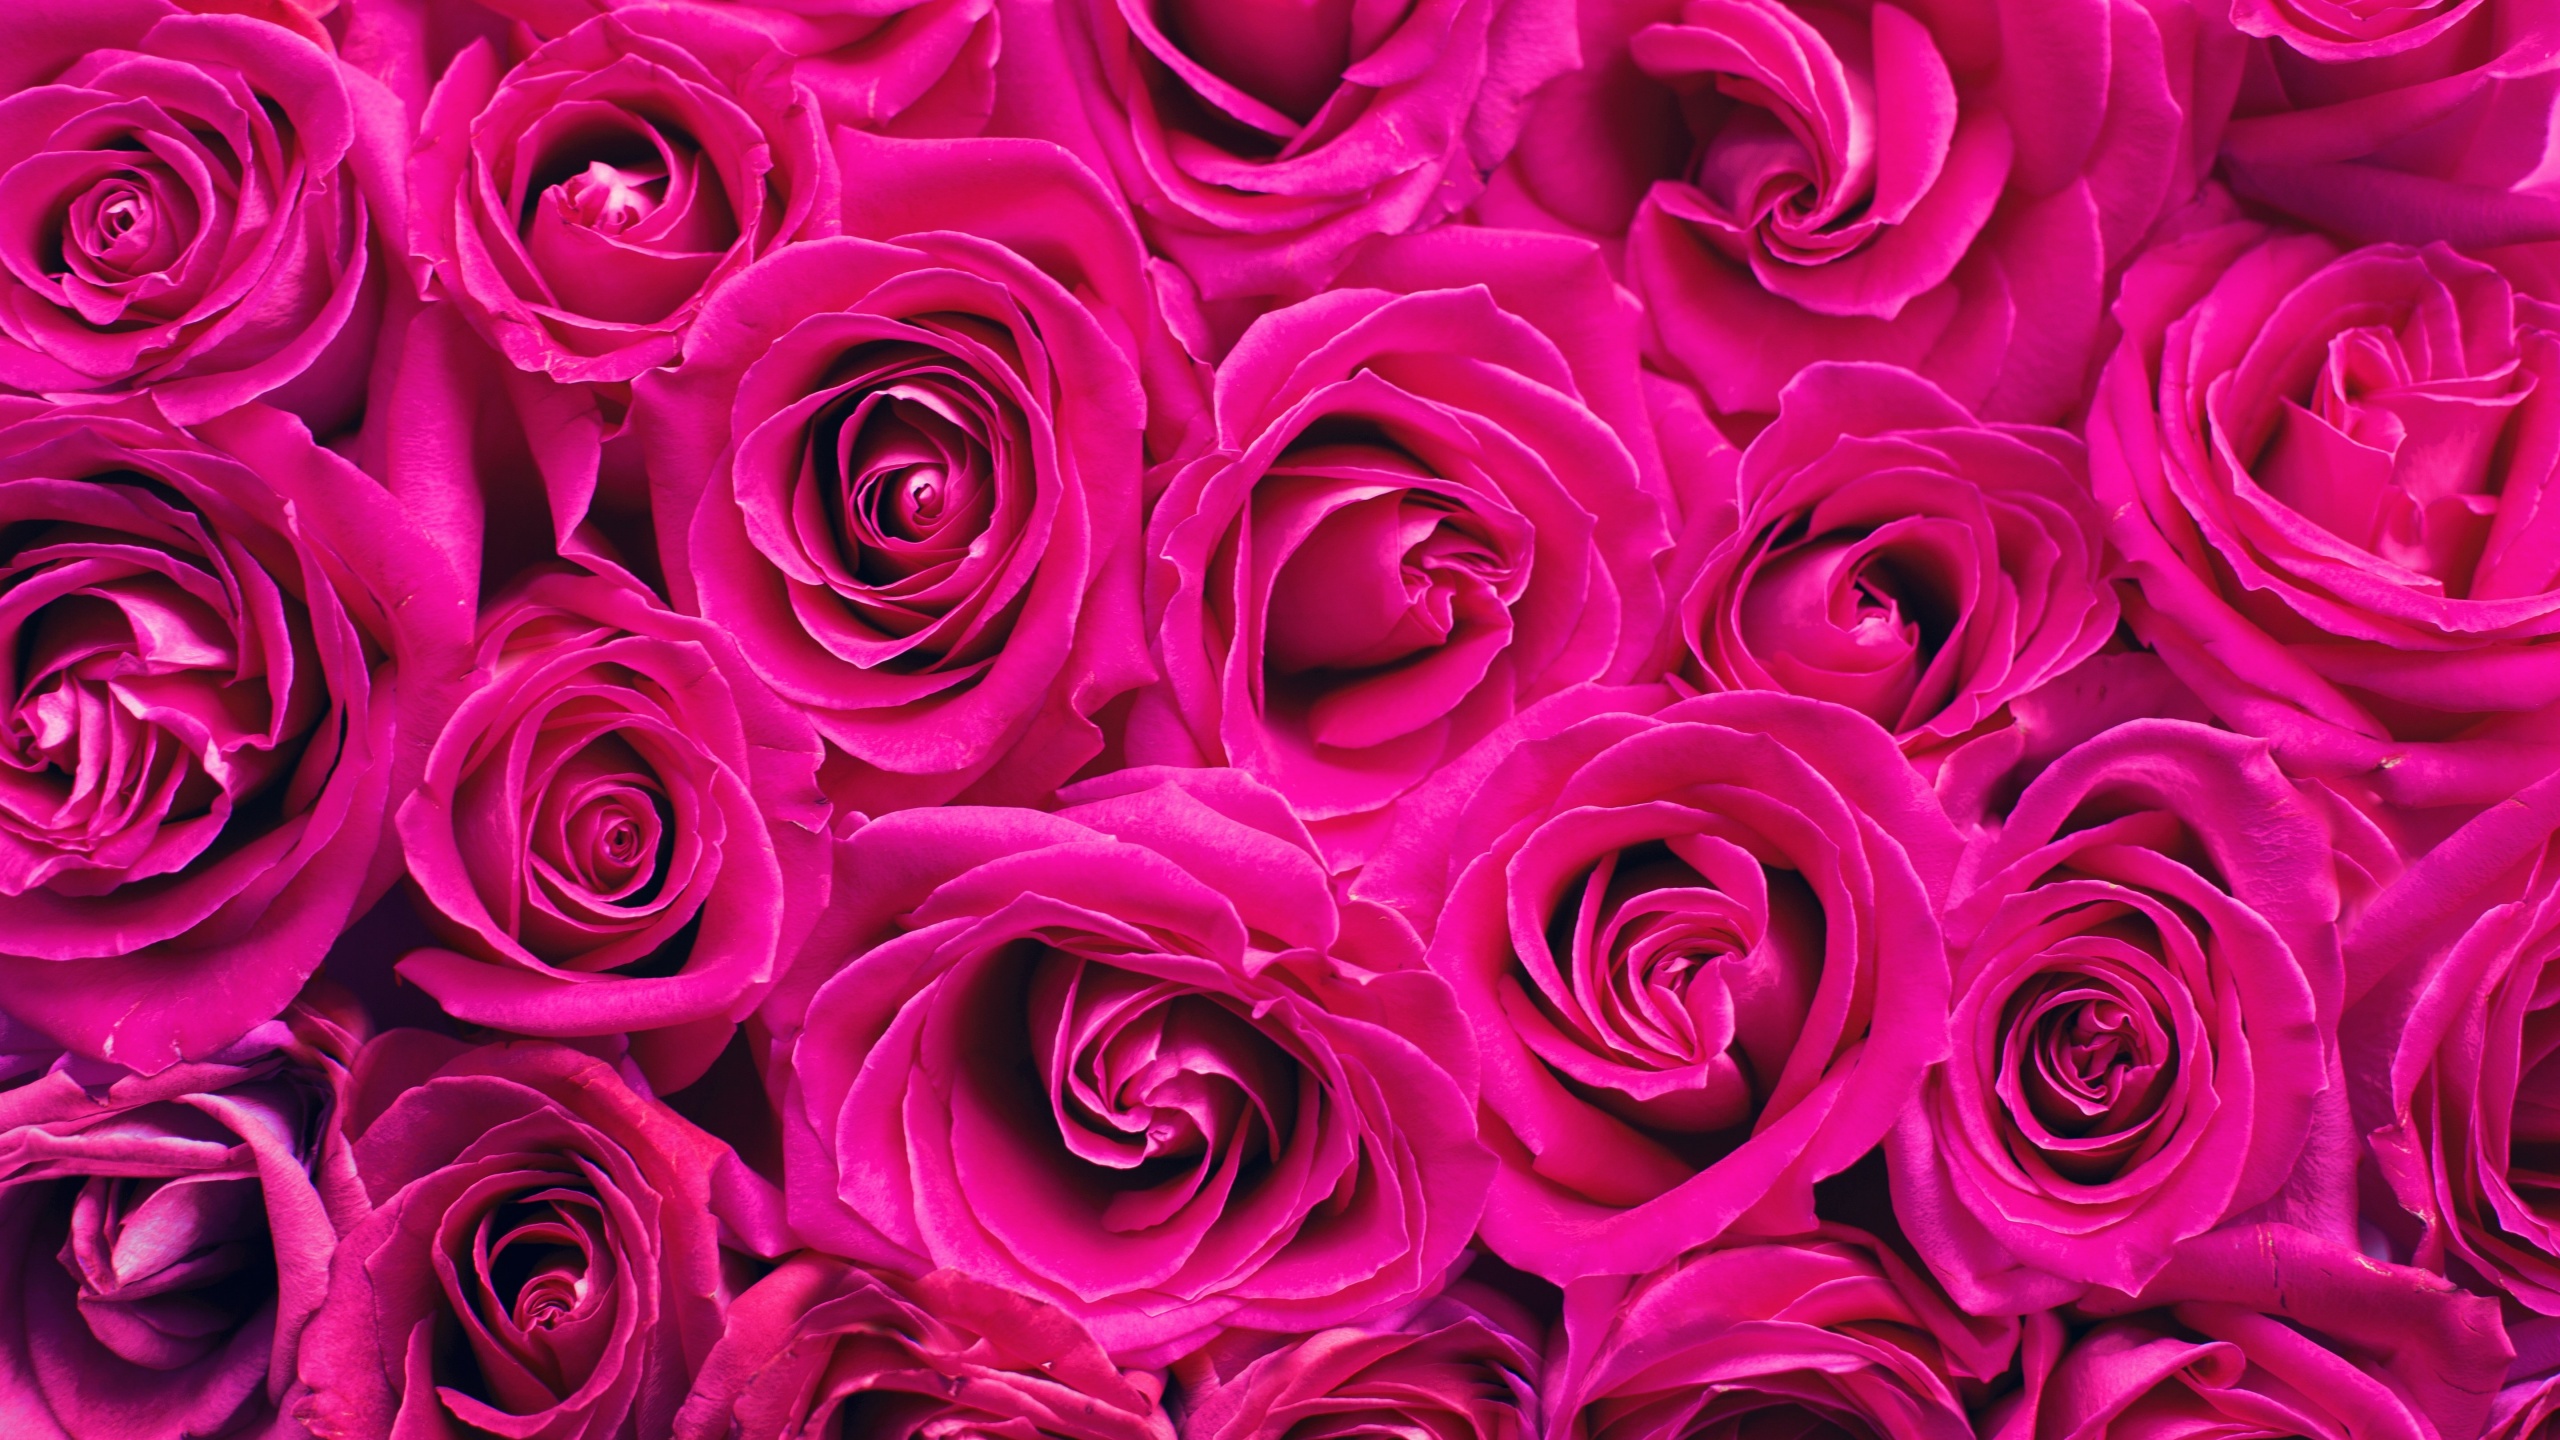 Hình nền hoa hồng hồng 4K, nền hoa, #5760 khiến cho trái tim bạn như tan chảy trong vẻ đẹp hoàn hảo của từng hạt phấn trên những cánh hoa. Với chất lượng hình ảnh 4K đầy sắc nét và tinh tế, đây chắc chắn là một lựa chọn không thể bỏ qua cho những tín đồ yêu hoa.